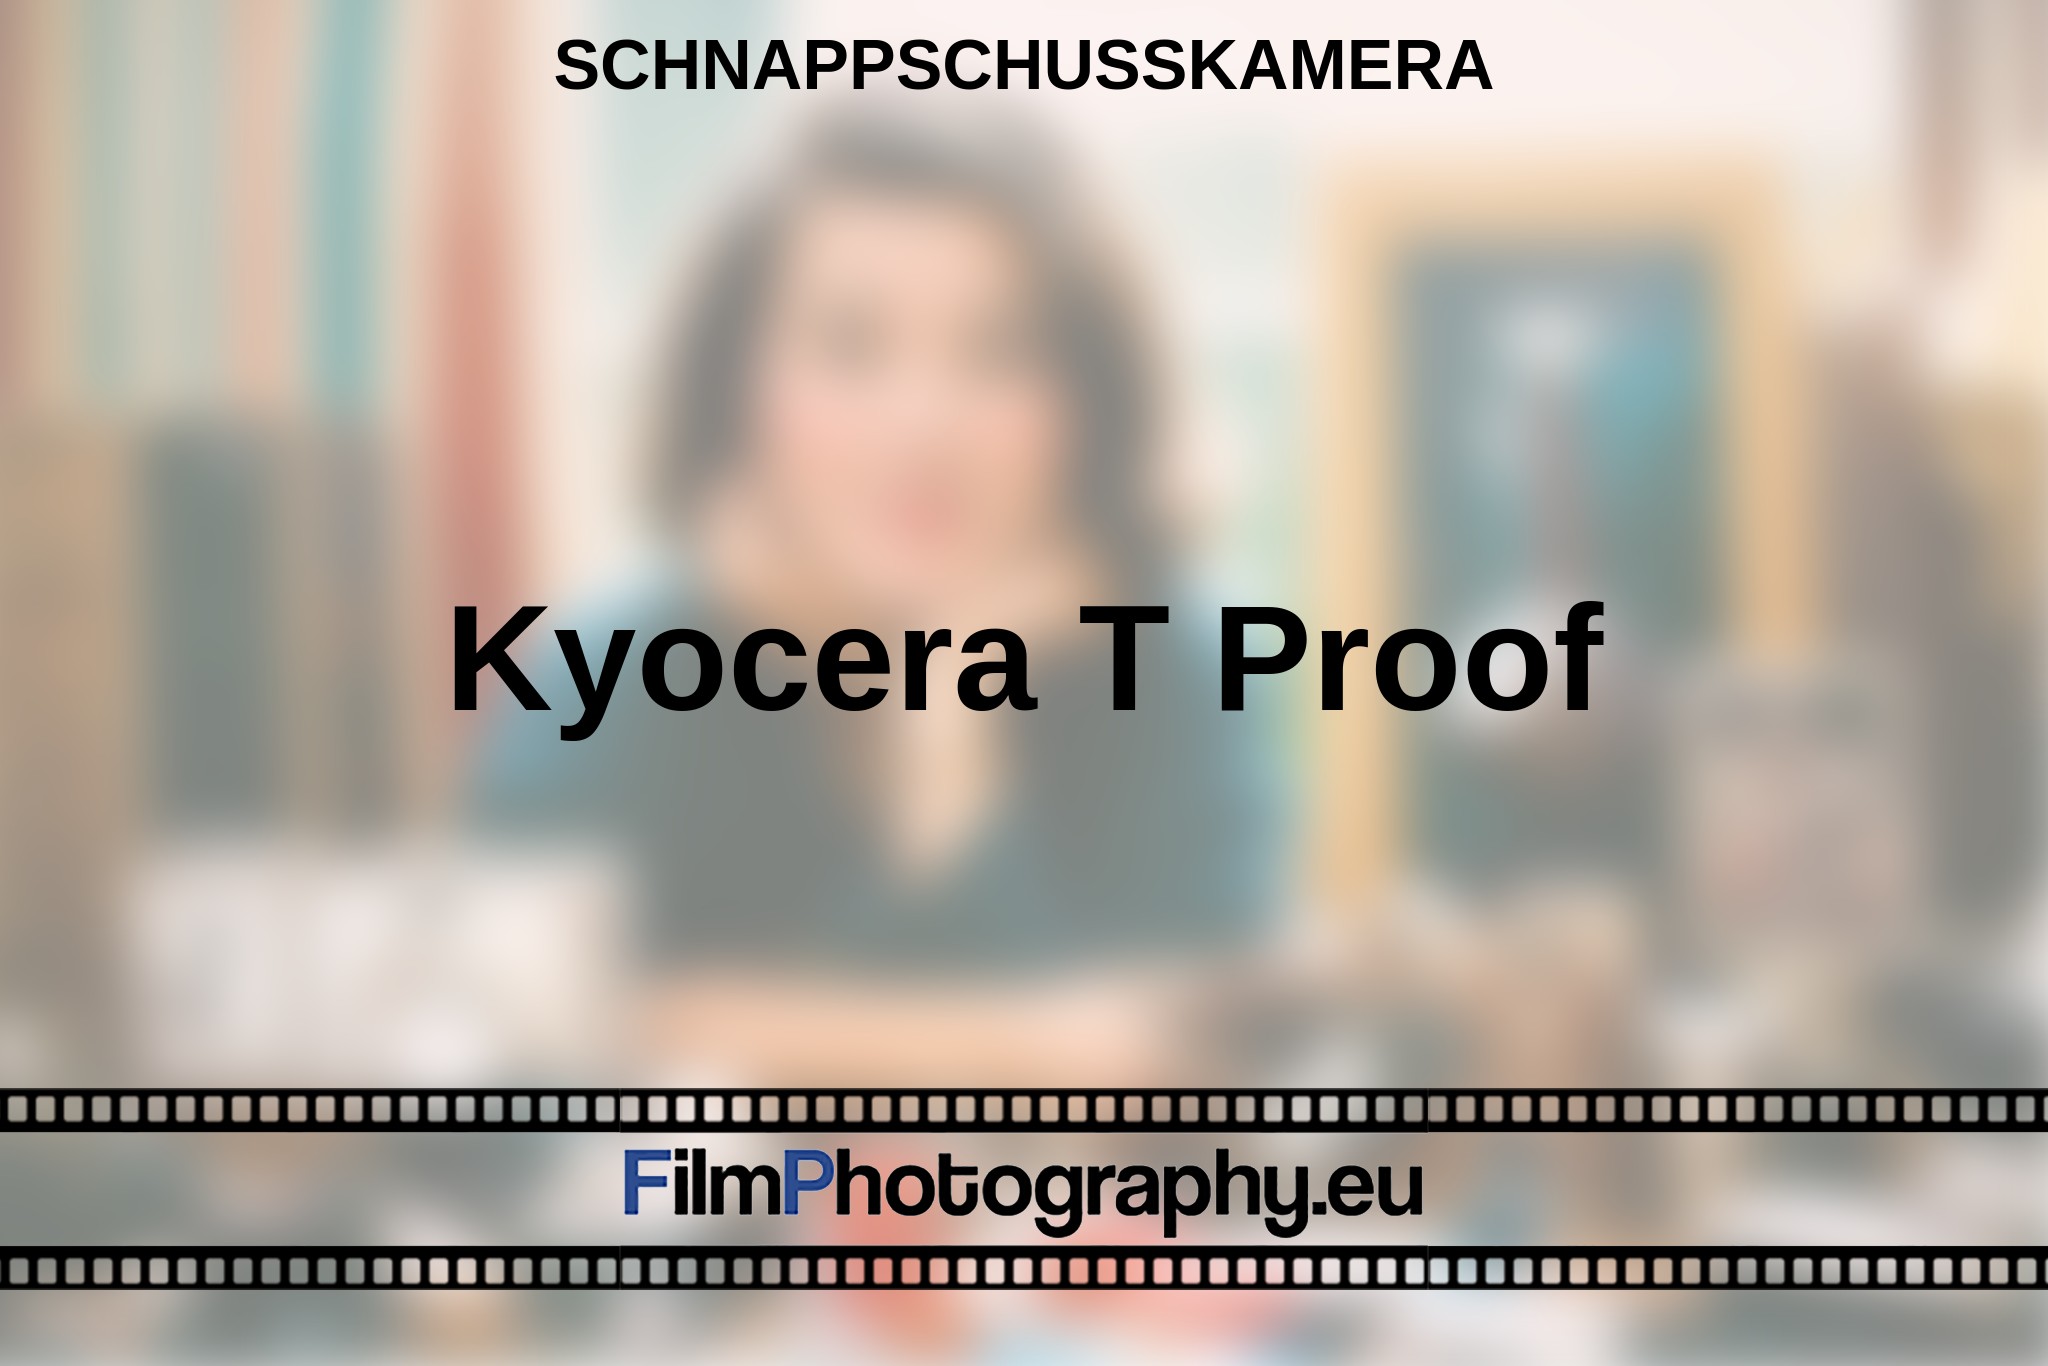 kyocera-t-proof-schnappschusskamera-bnv.jpg